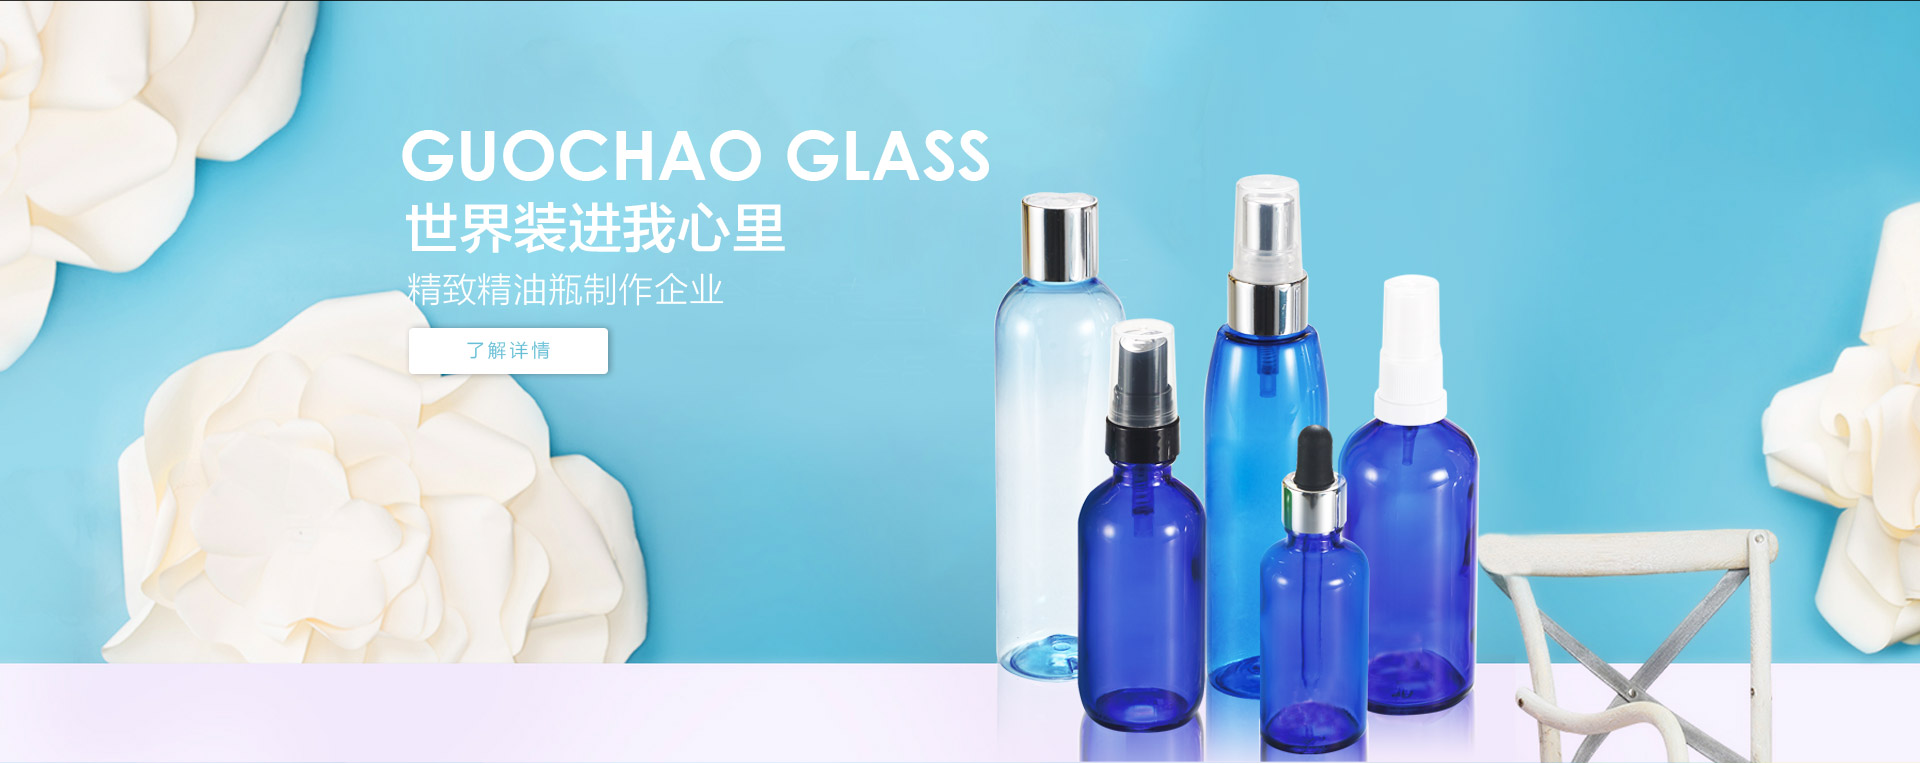 guochao glass bottle